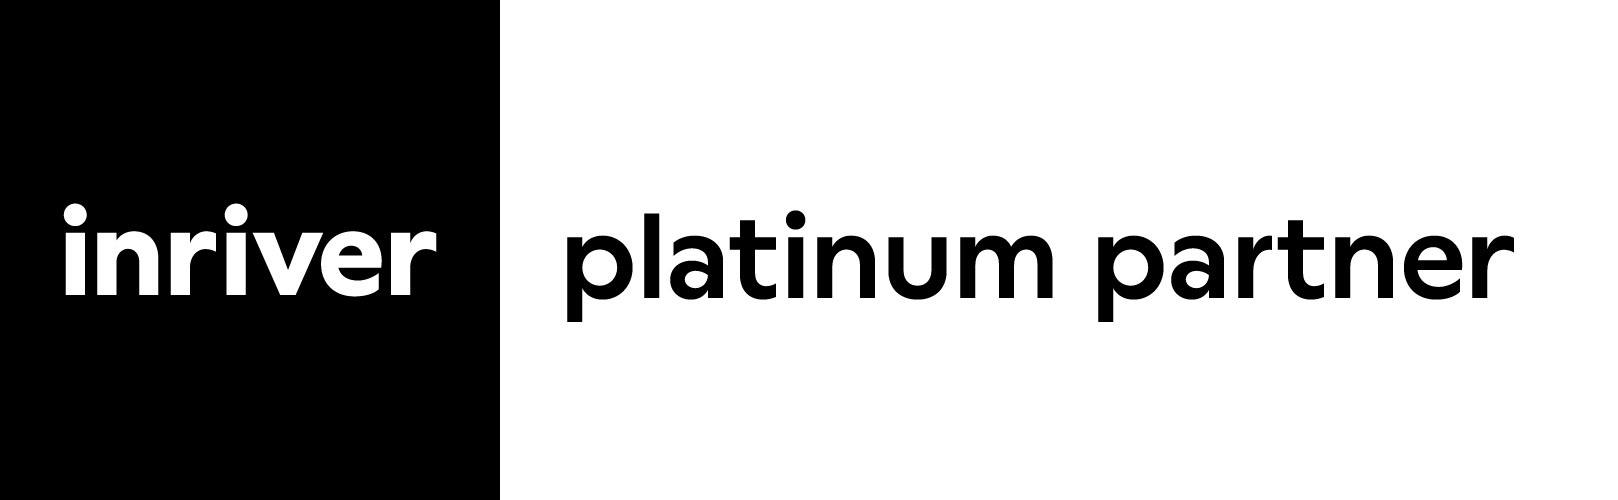 Immeo-partner-inriver-platinum